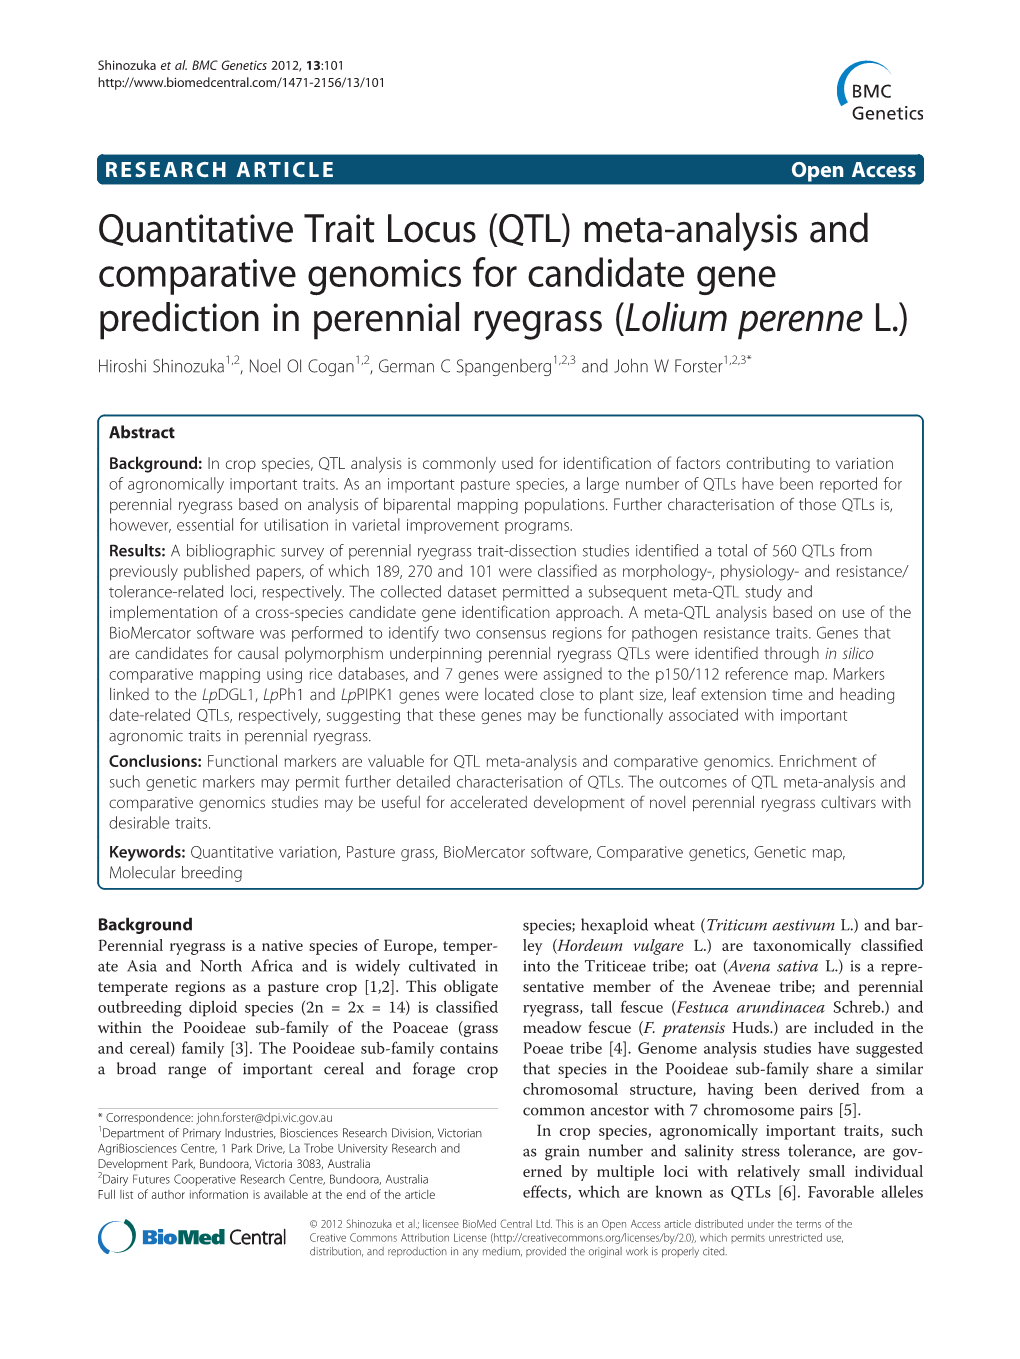 Quantitative Trait Locus (QTL)